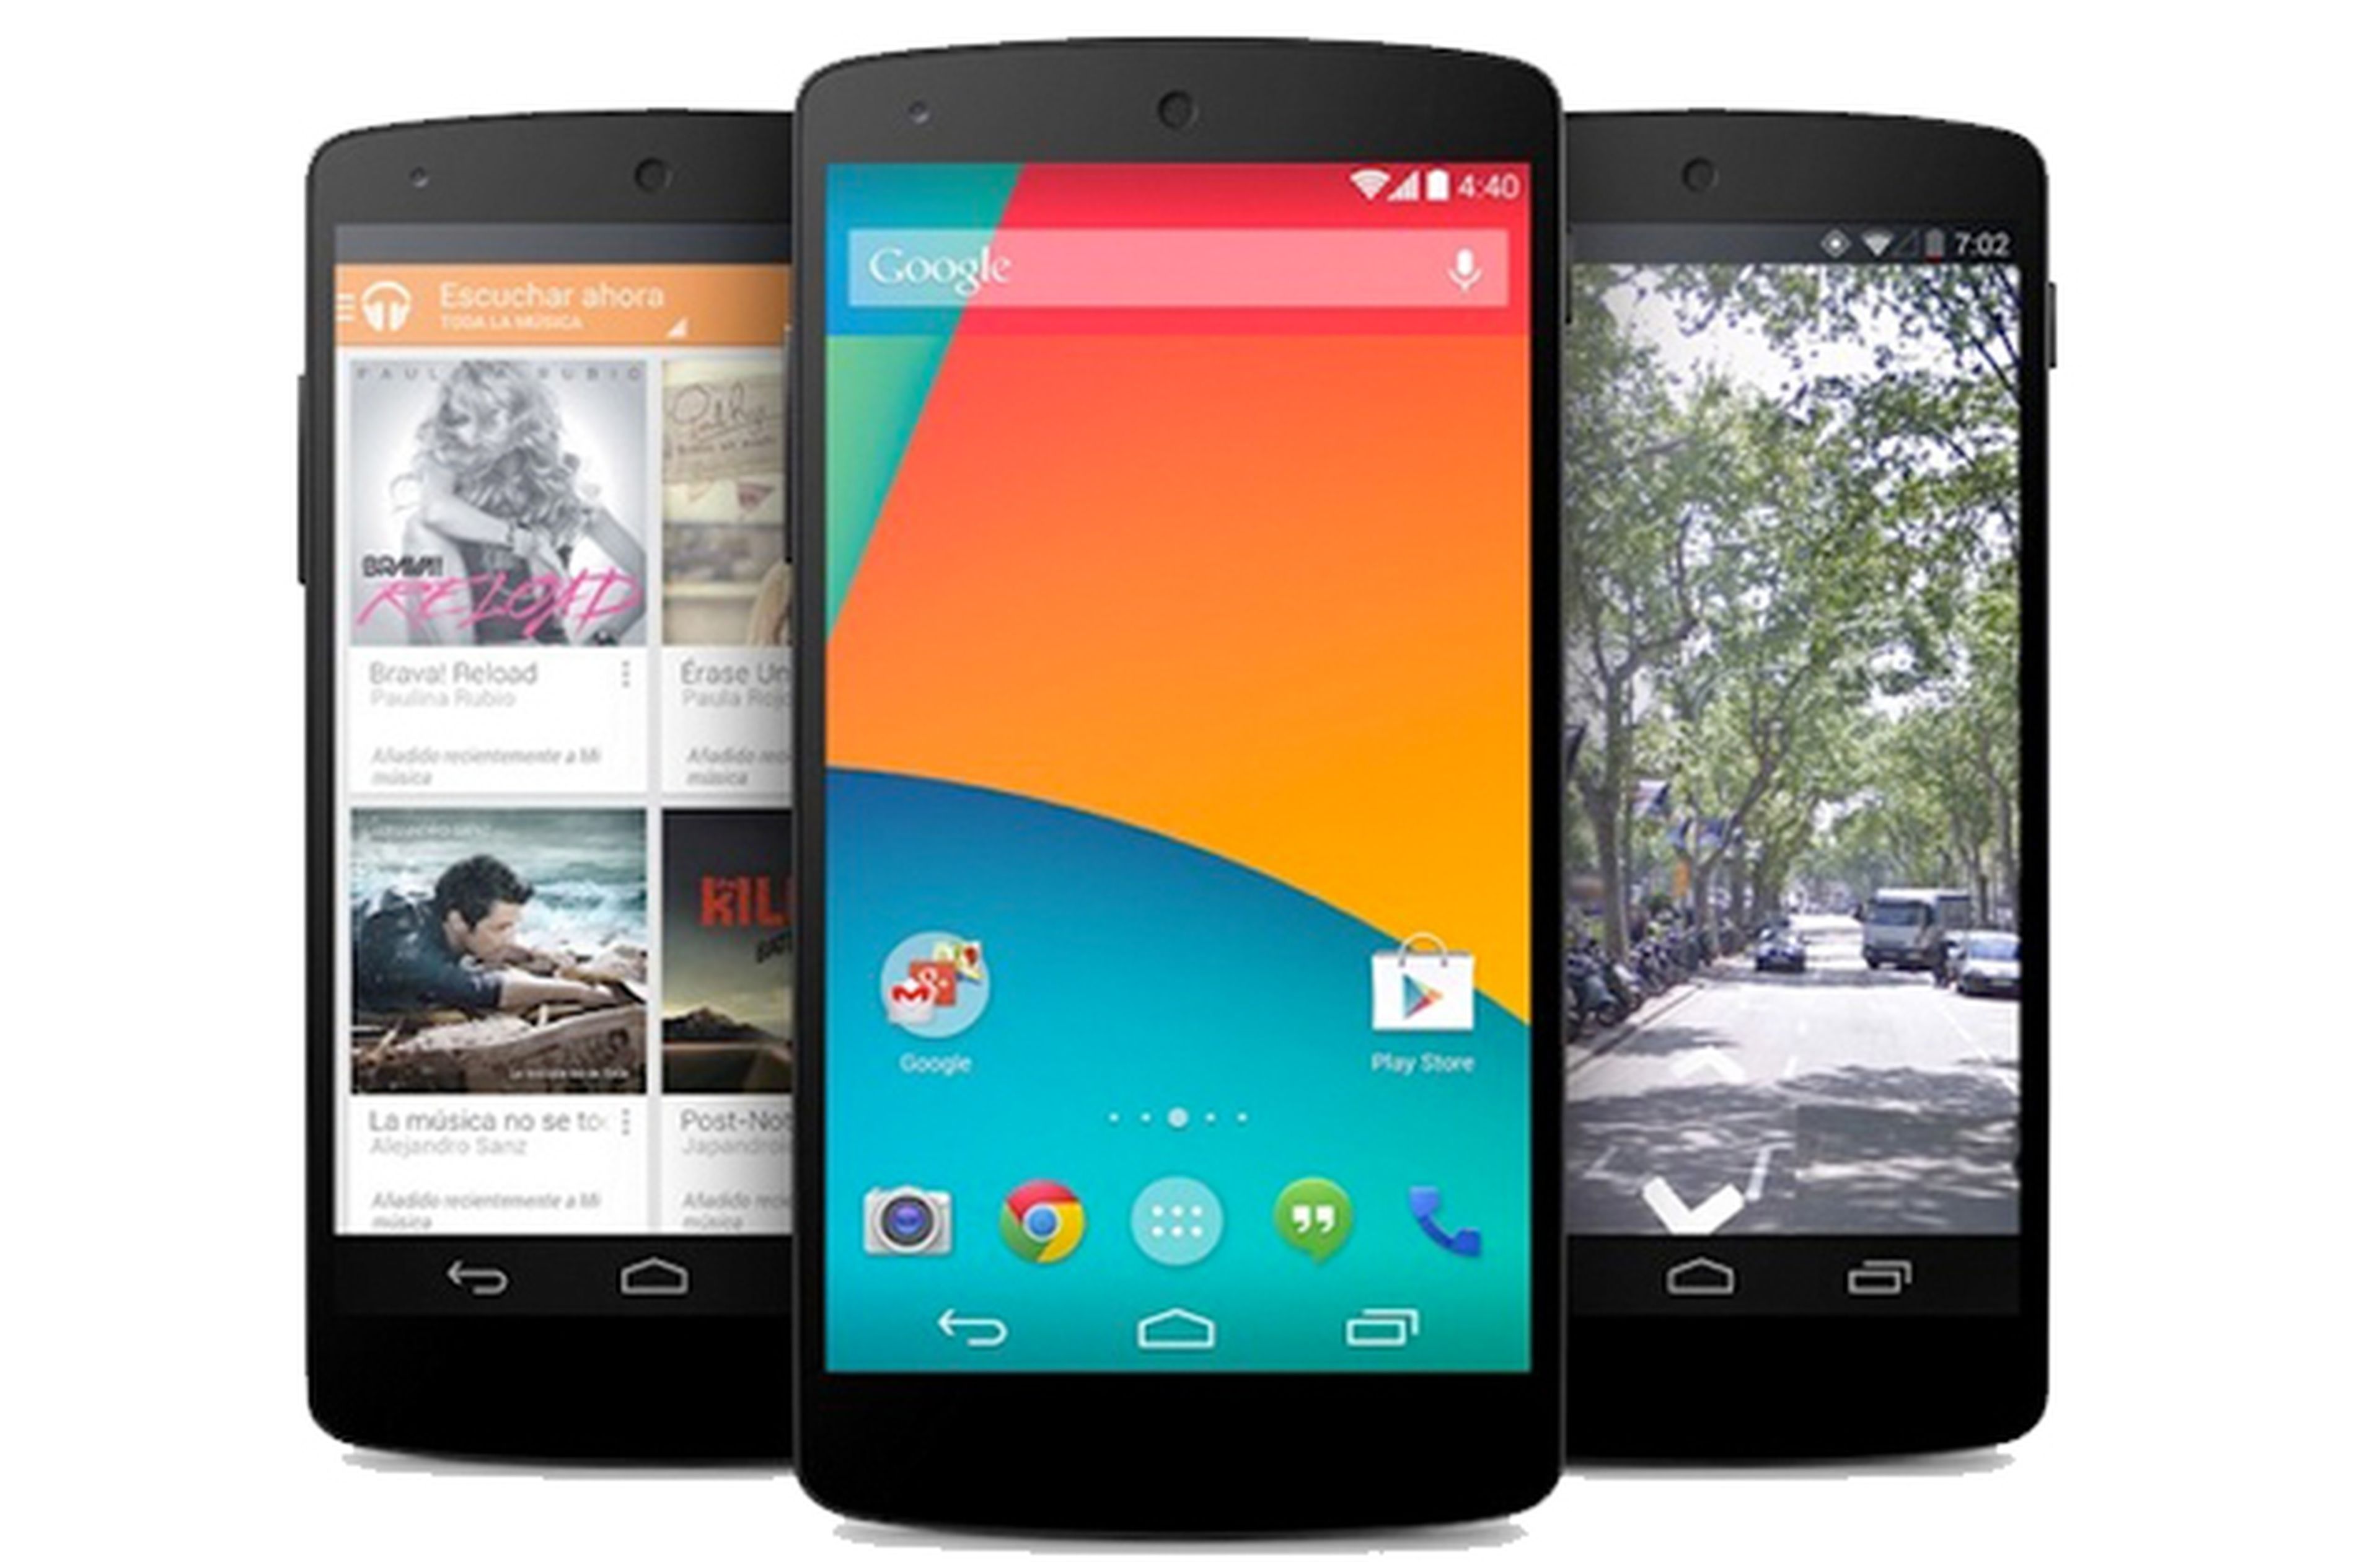 Cierto es que se esperaba bastante más de Google, como una mejor batería o una mayor resolución de cámara, pero nadie duda de que se trata de uno de los mejores smartphones en lo que se refiere a la relación calidad-precio. El Nexus 5 se gana por meritos